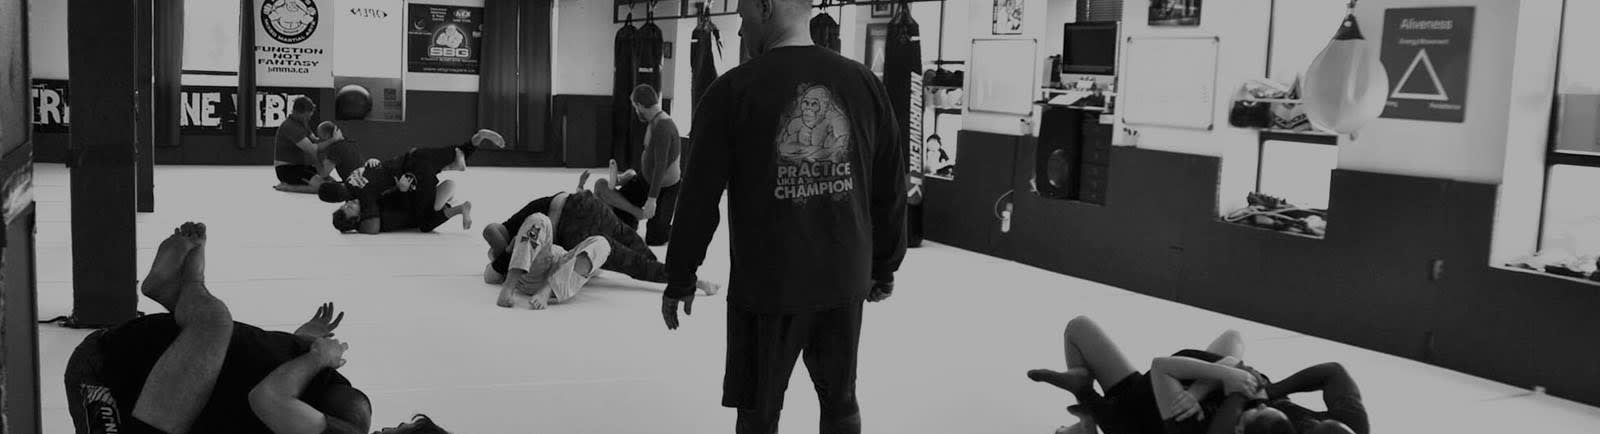 Brazilian Jiu Jitsu Training | Straight Blast Gym Niagara